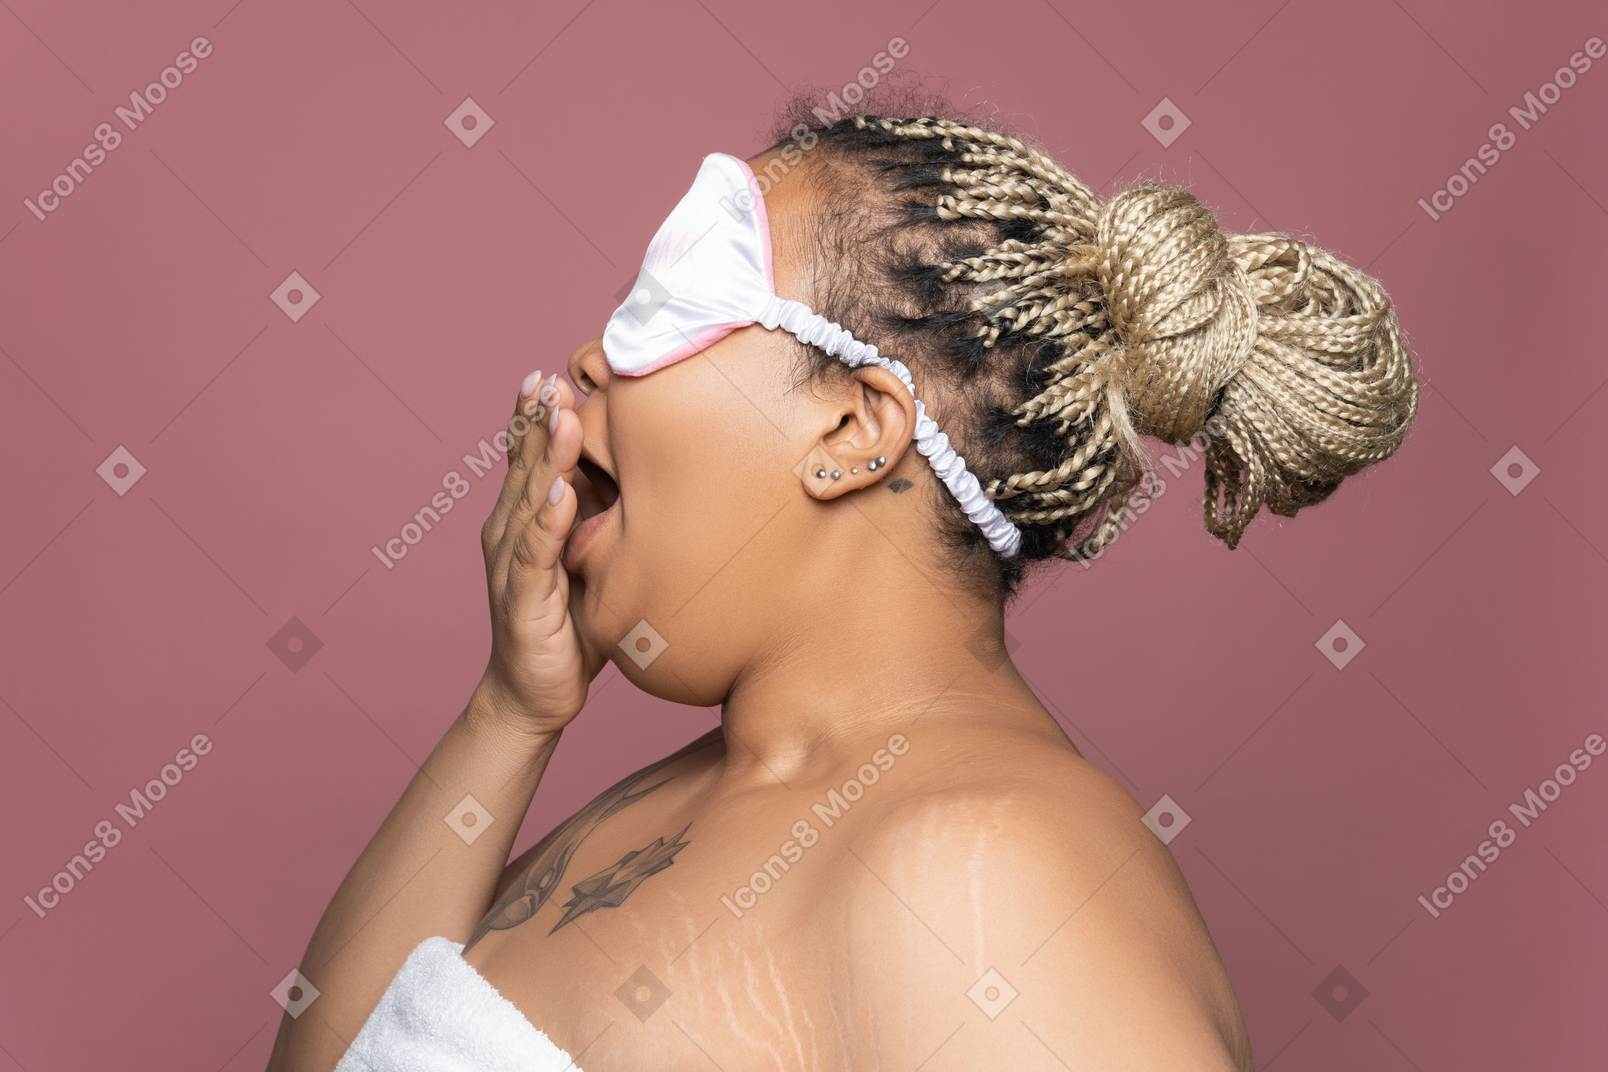 Woman in sleeping mask yawning in profile